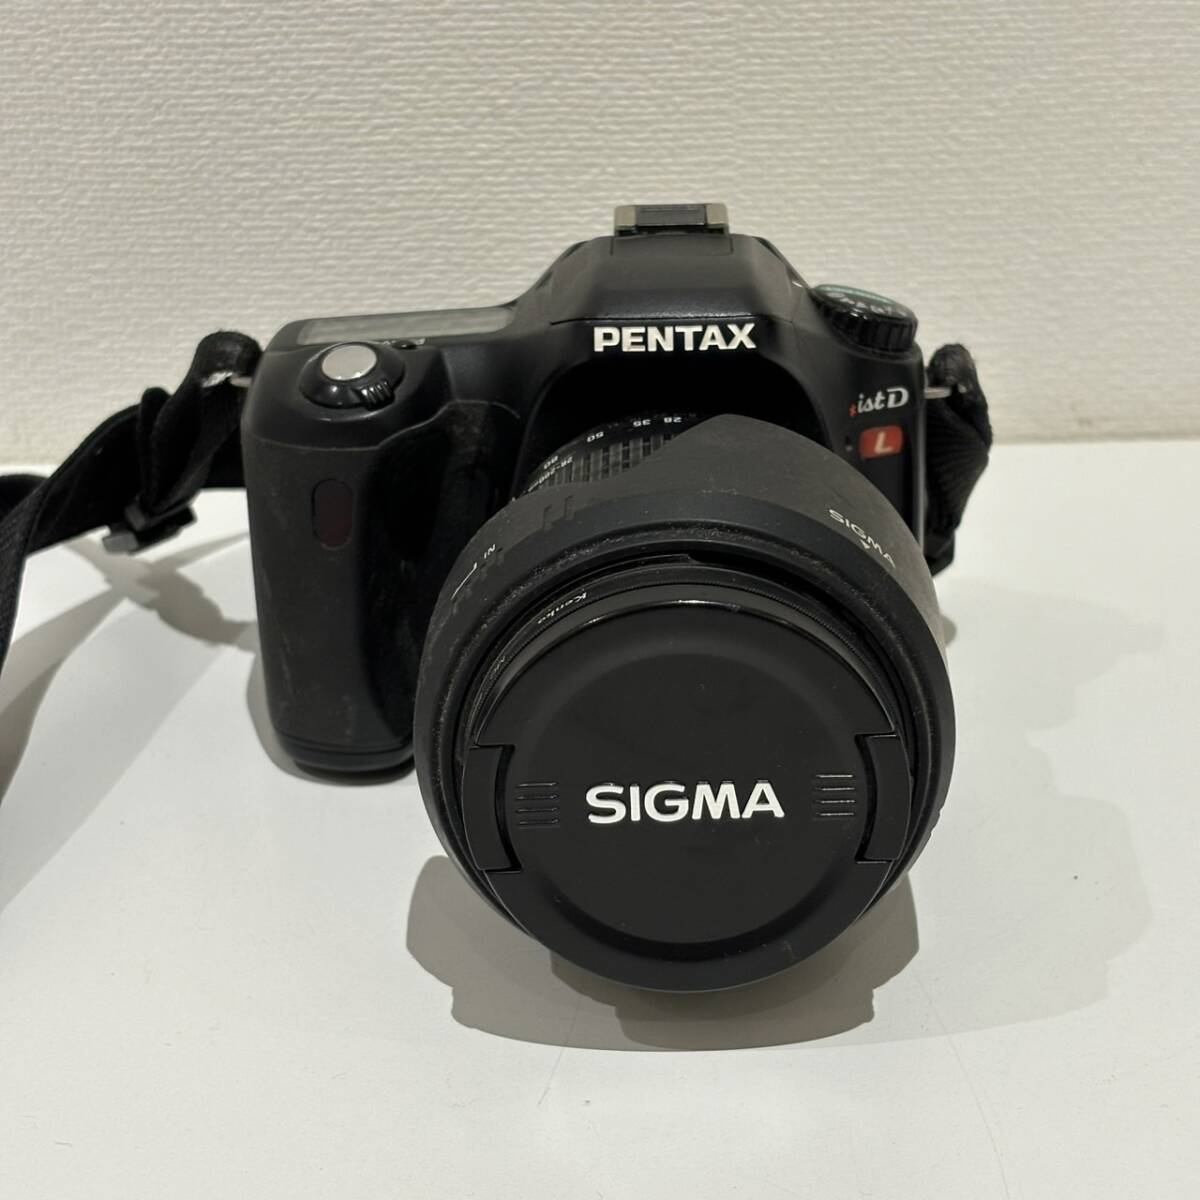 【AMT-10729】PENTAX ist DL カメラ本体 ジャンク品 SIGMA COMPACT HYPER ZOOM 28-200mm MACRO ASPHERICAL IF シグマ レンズ ペンタックスの画像2